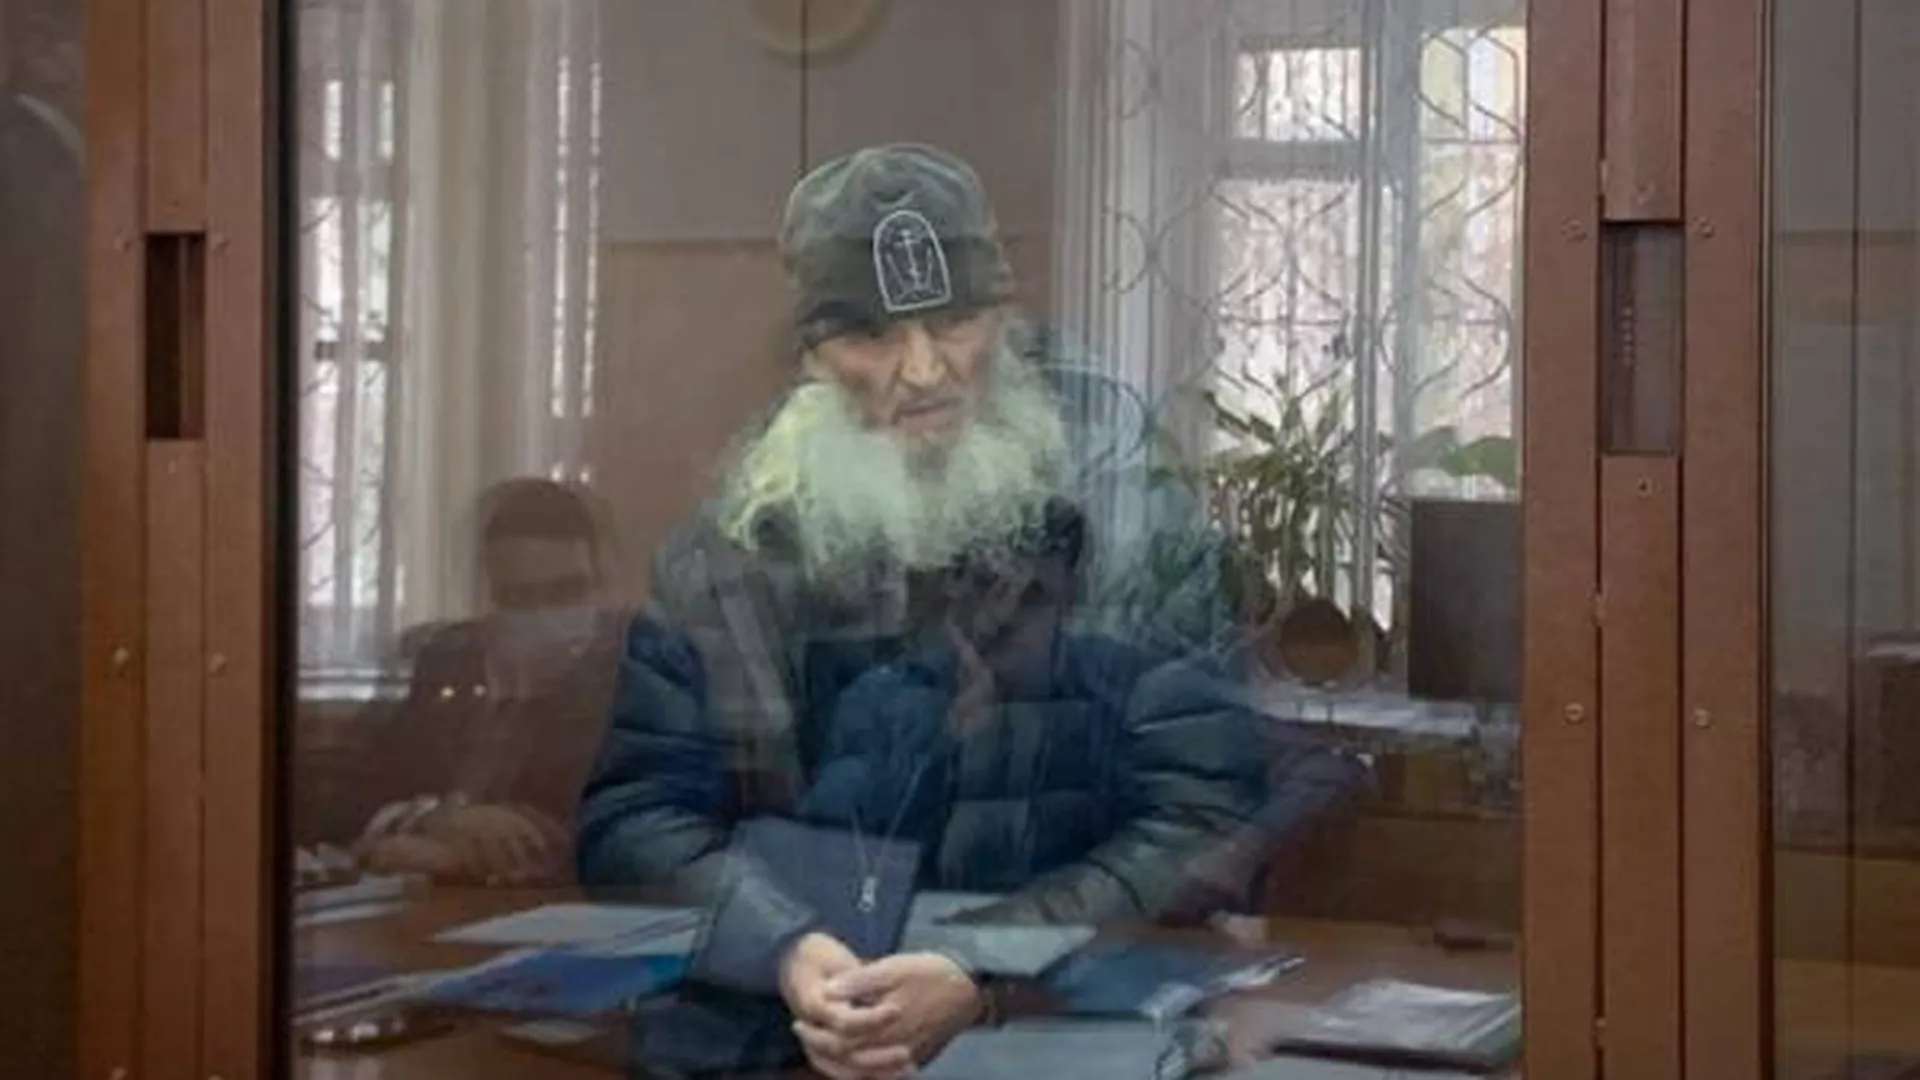 Обвинение попросило посадить бывшего схиигумена Сергия на 4 года